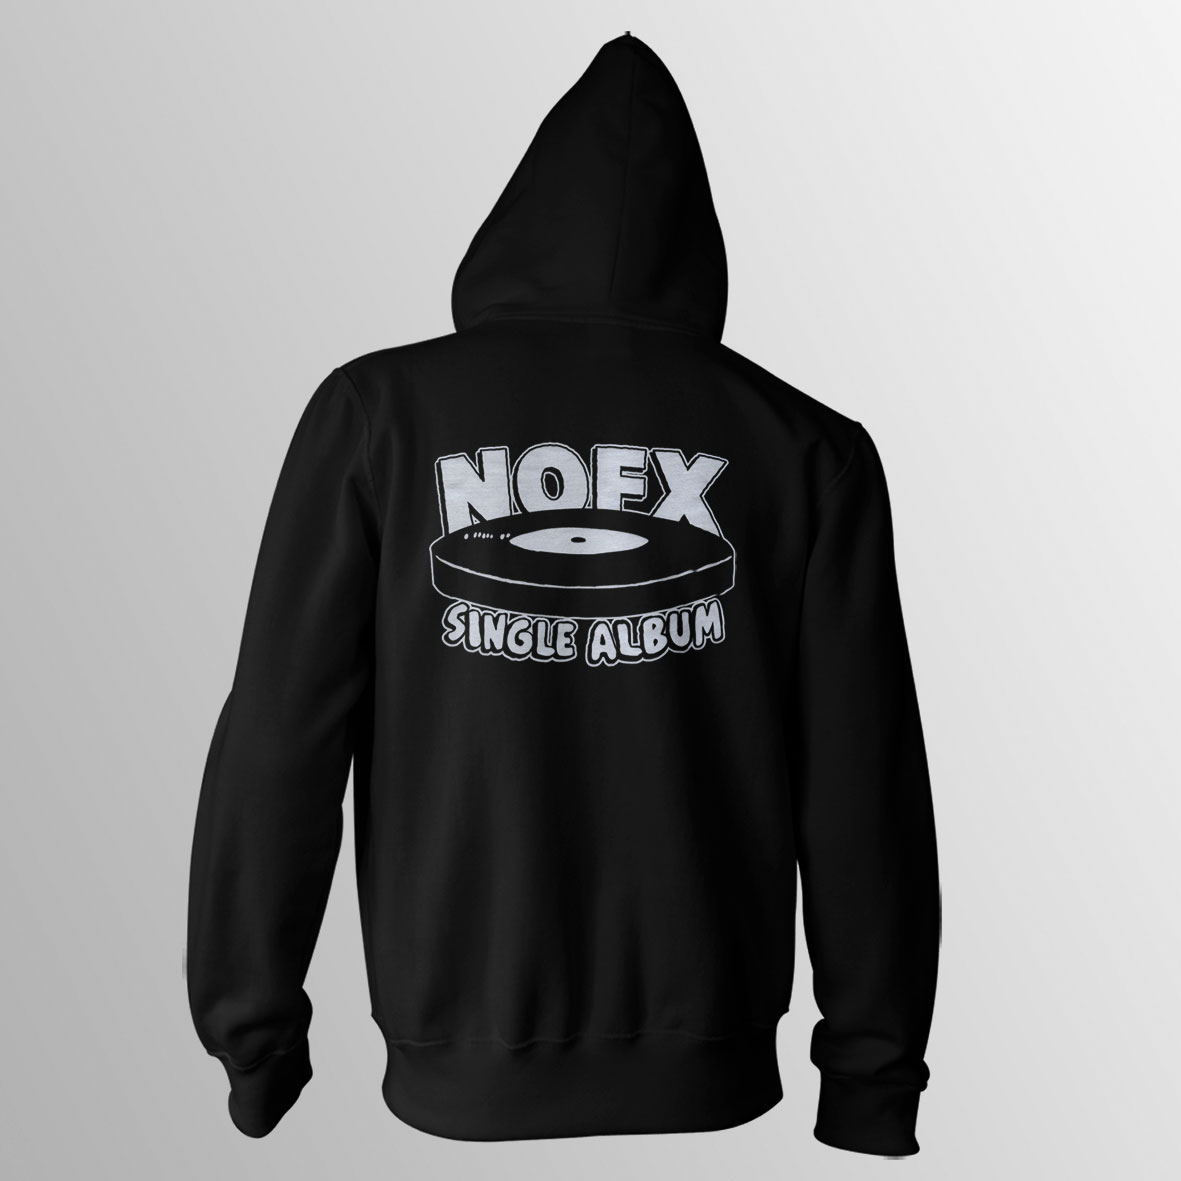 NOFX / Single Album ブラック パーカー - PUNK MART